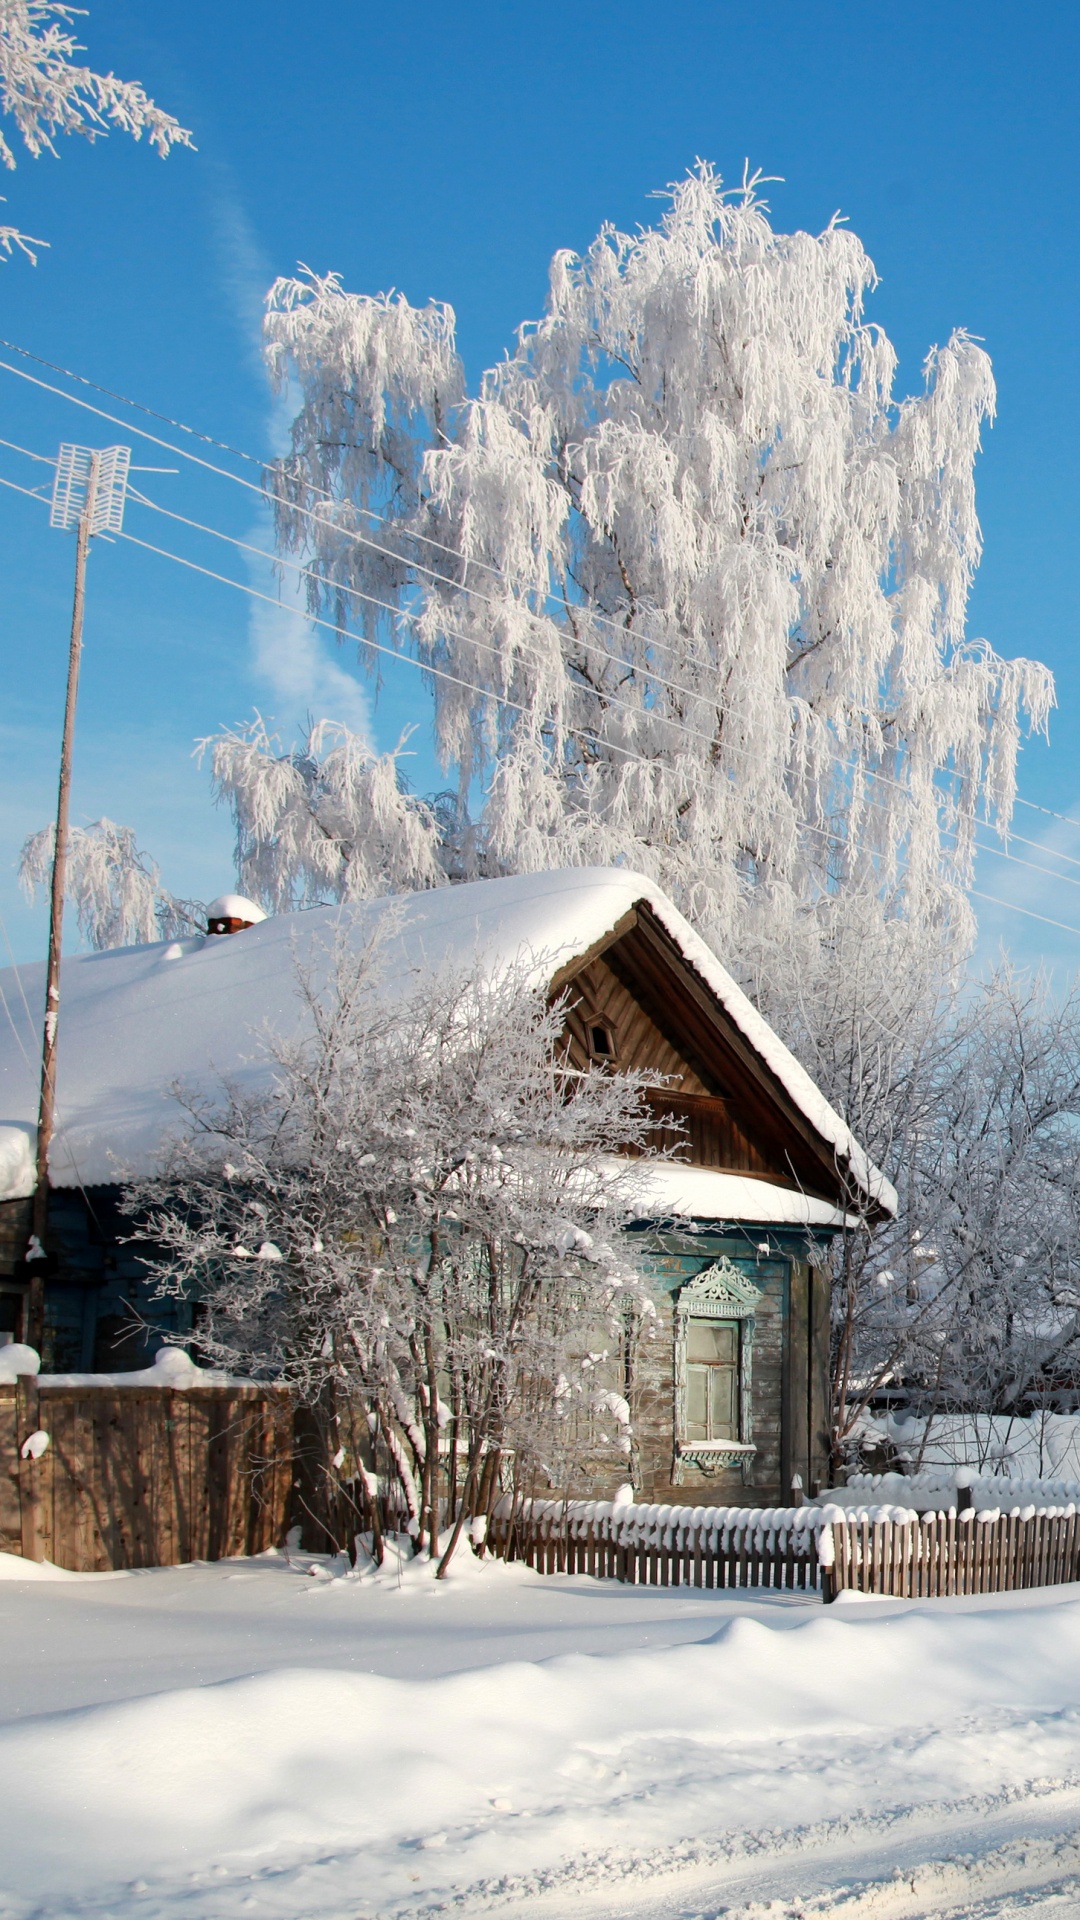 Braunes Holzhaus in Der Nähe Von Schneebedeckten Bäumen Unter Blauem Himmel Tagsüber. Wallpaper in 1080x1920 Resolution